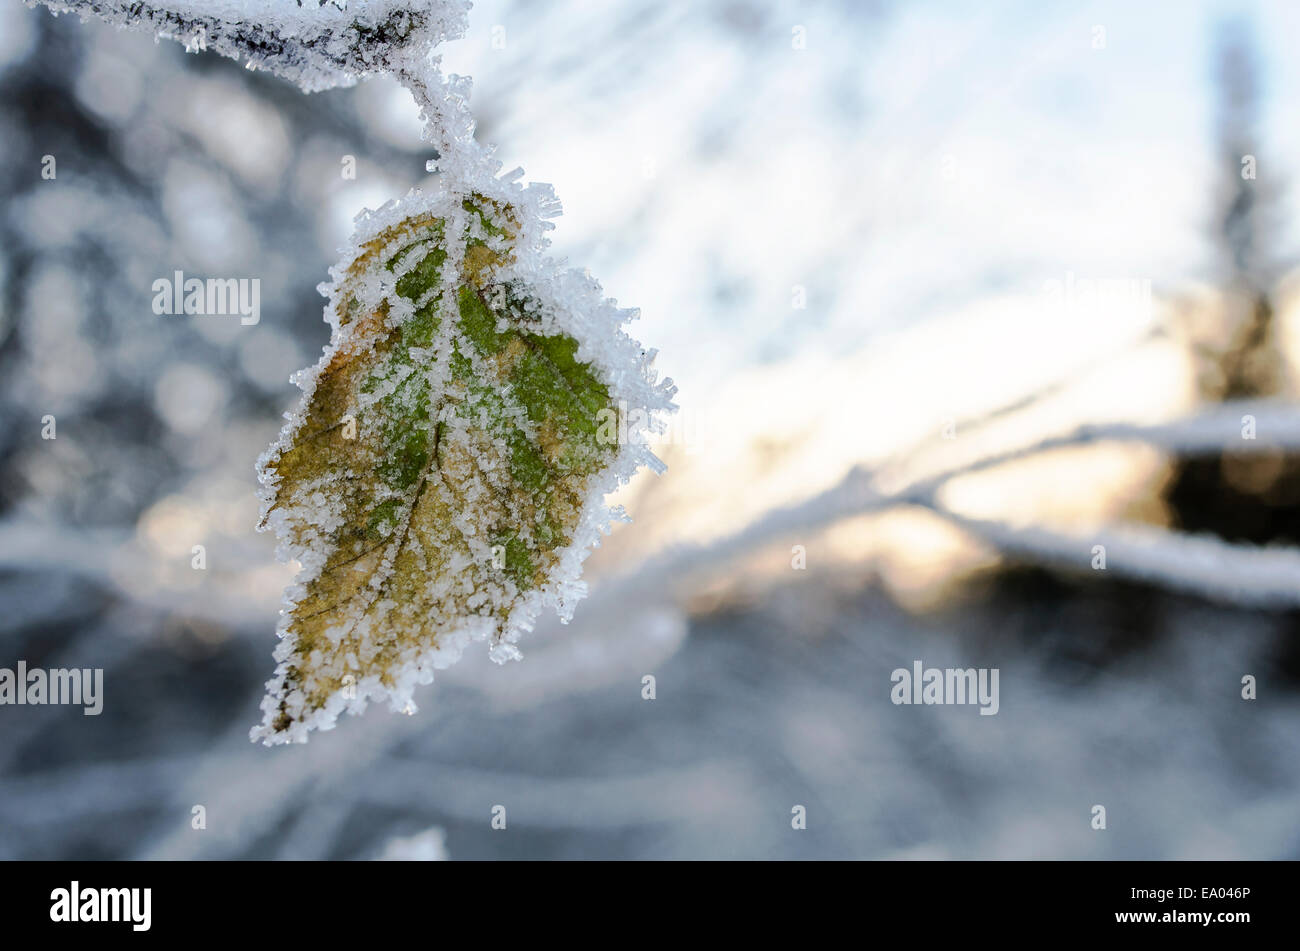 Snowy leaf Stock Photo